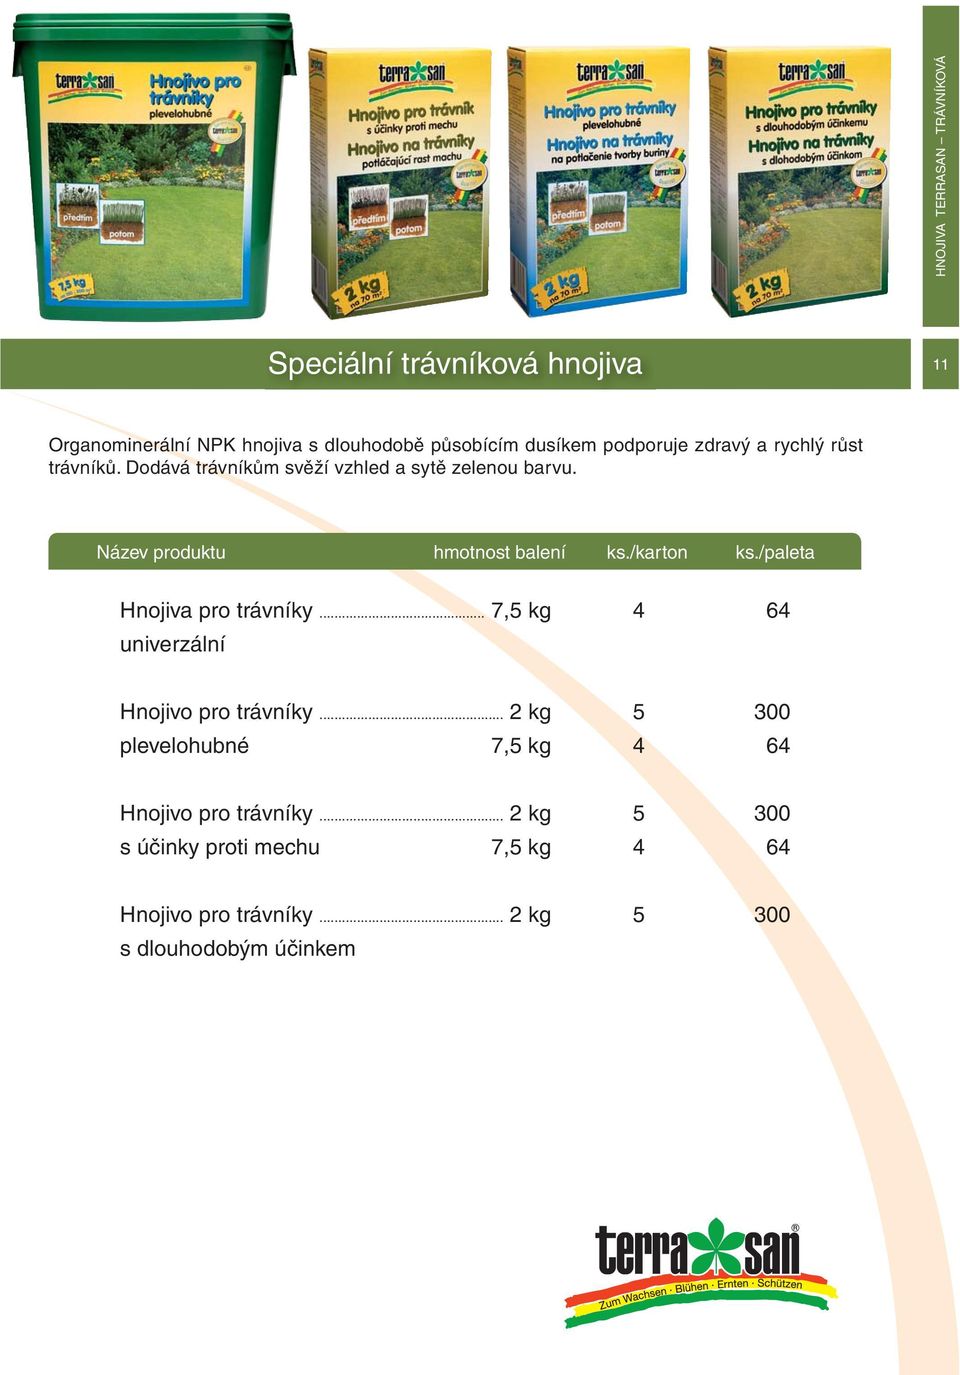 Název produktu hmotnost balení ks./karton ks./paleta Hnojiva pro trávníky... 7,5 kg 4 64 univerzální Hnojivo pro trávníky.